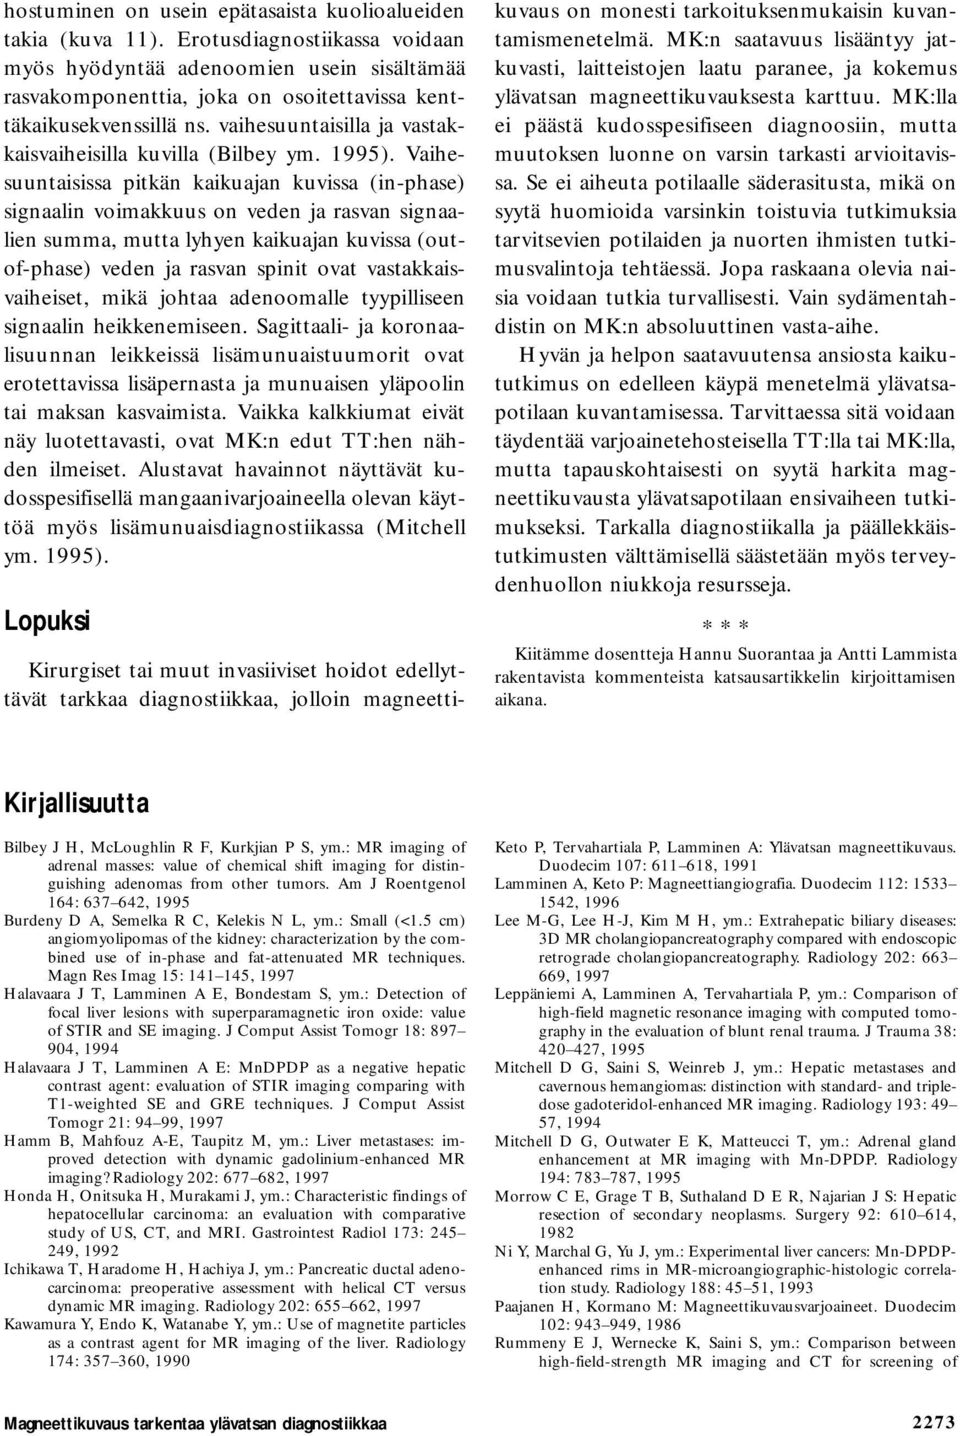 vaihesuuntaisilla ja vastakkaisvaiheisilla kuvilla (Bilbey ym. 1995).